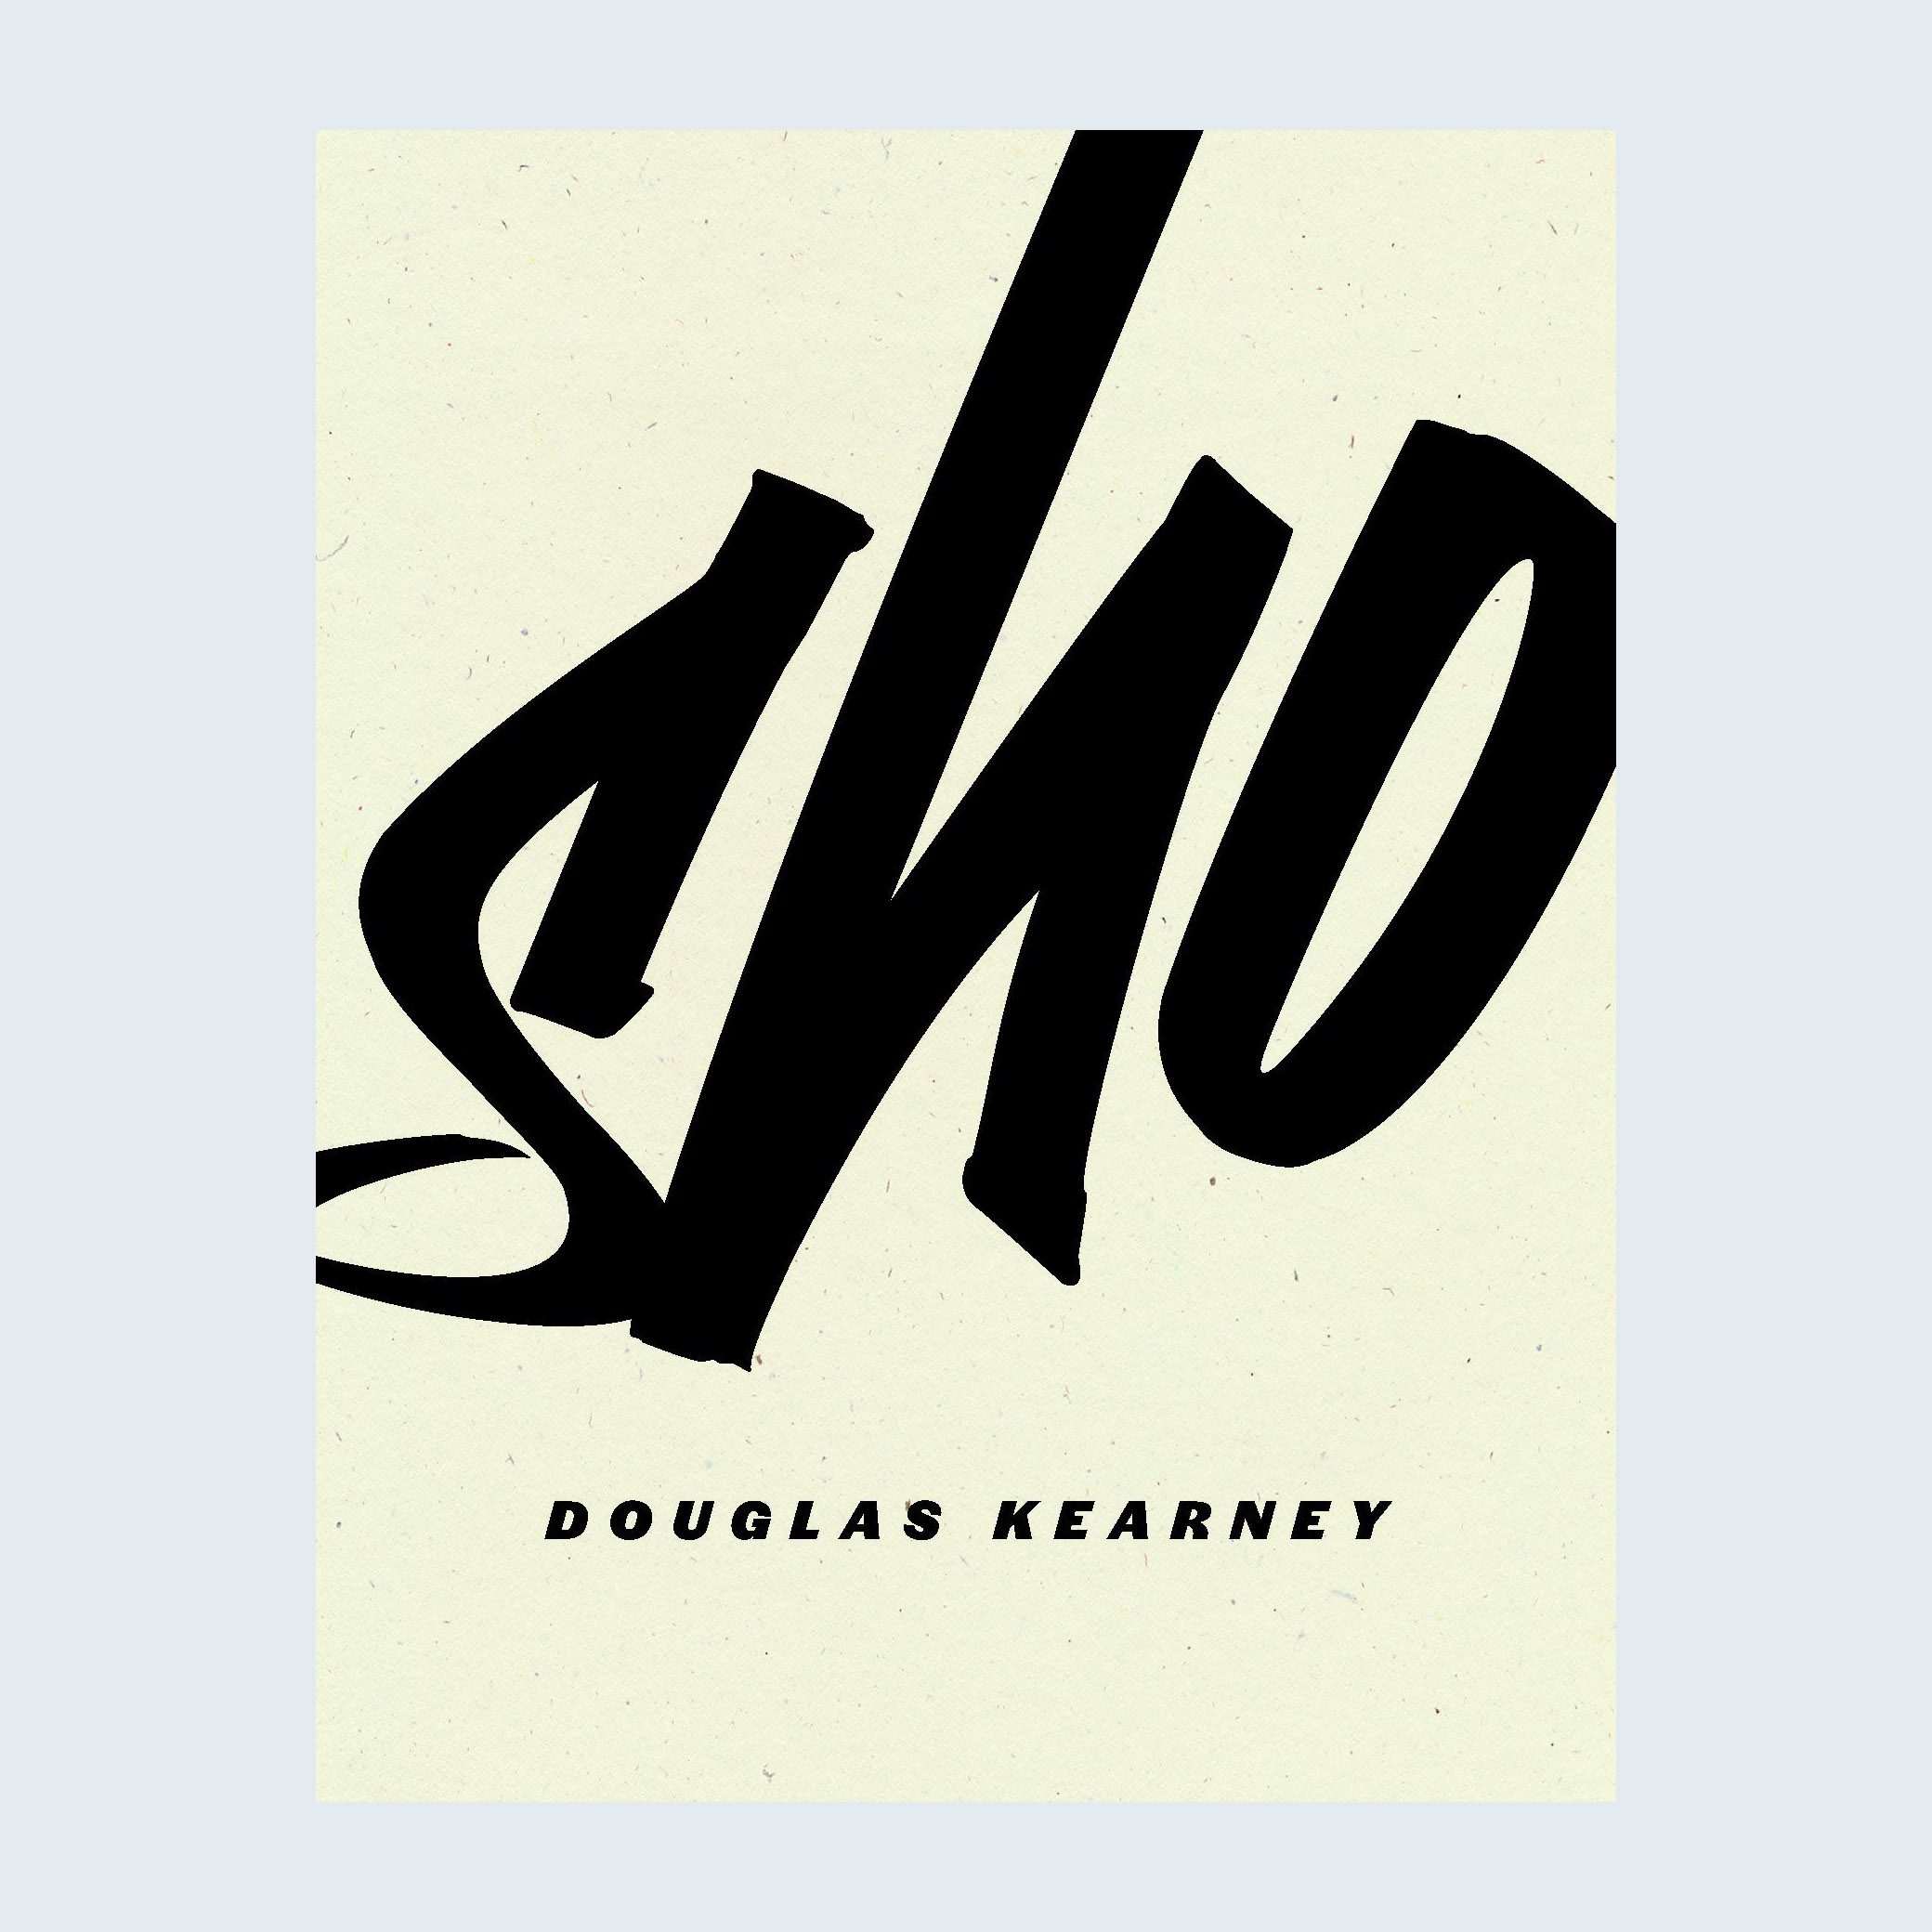 Sho by Douglas Kearney